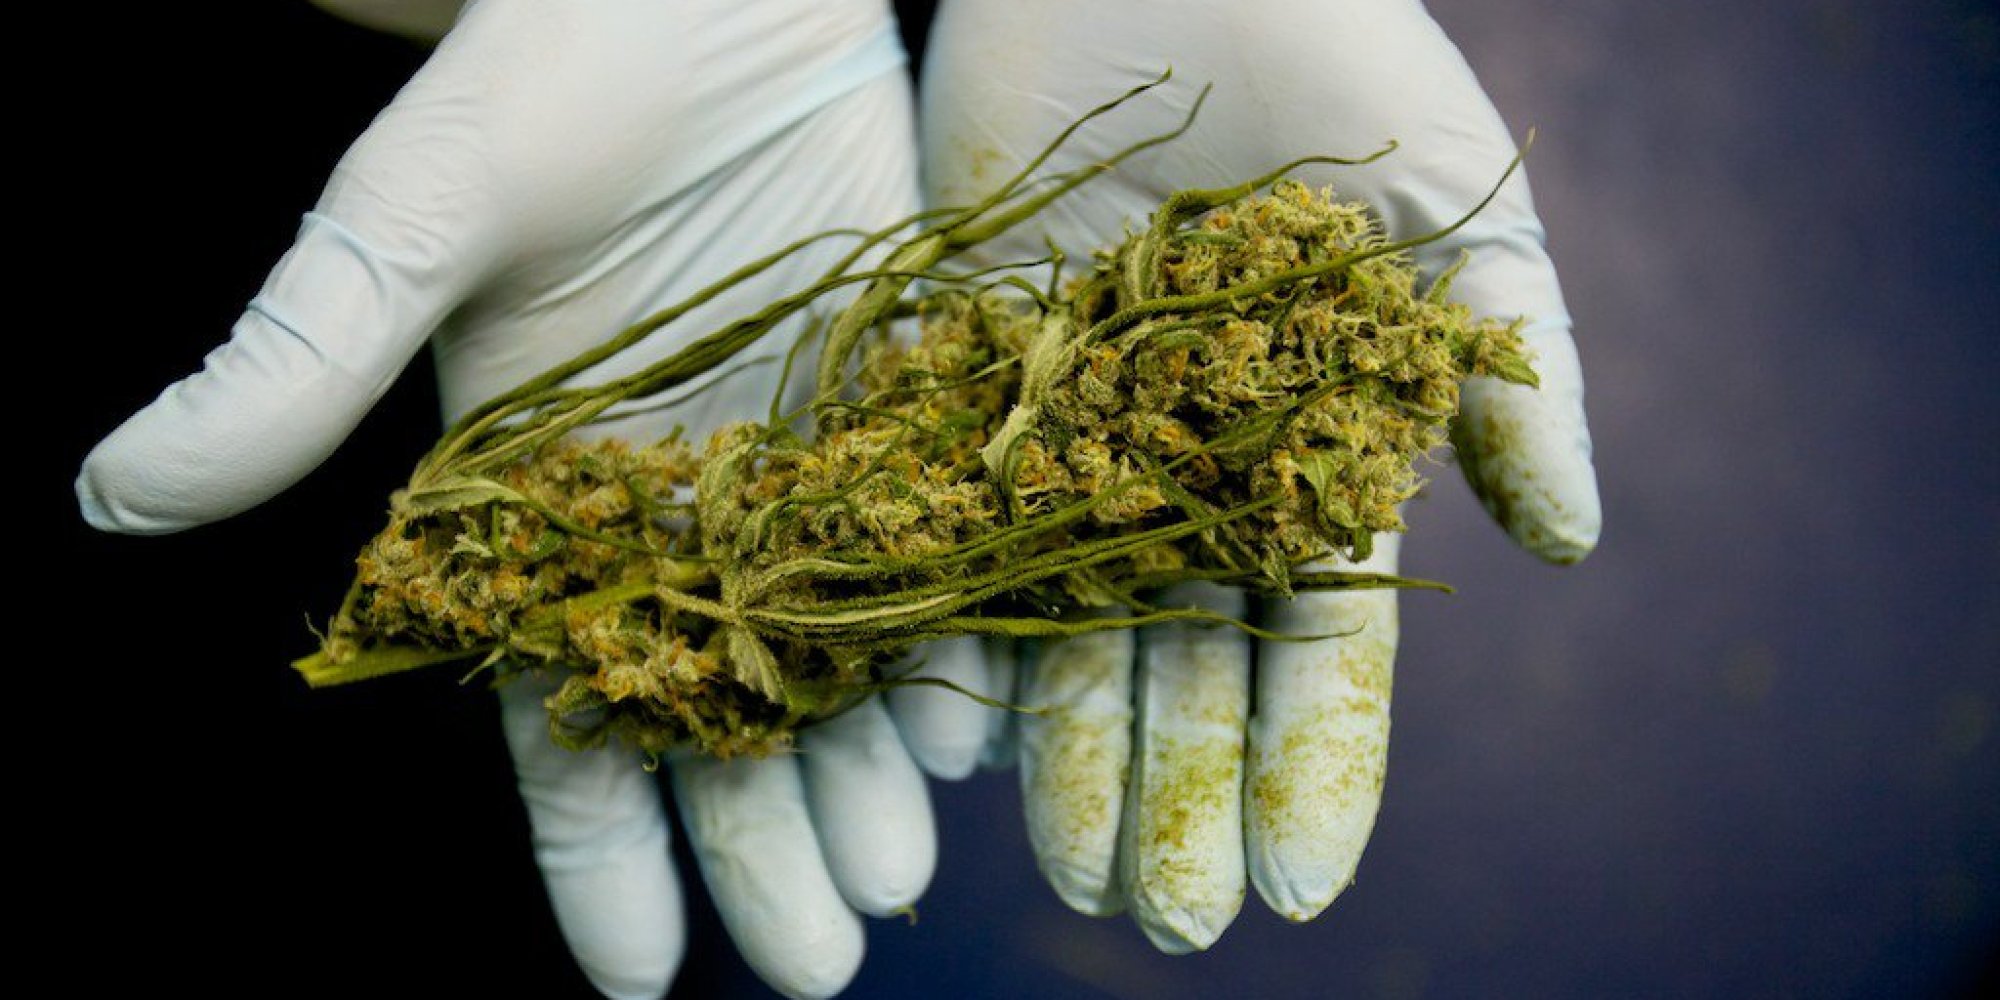 Colômbia rejeita importação de medicamentos com maconha | Maryjuana